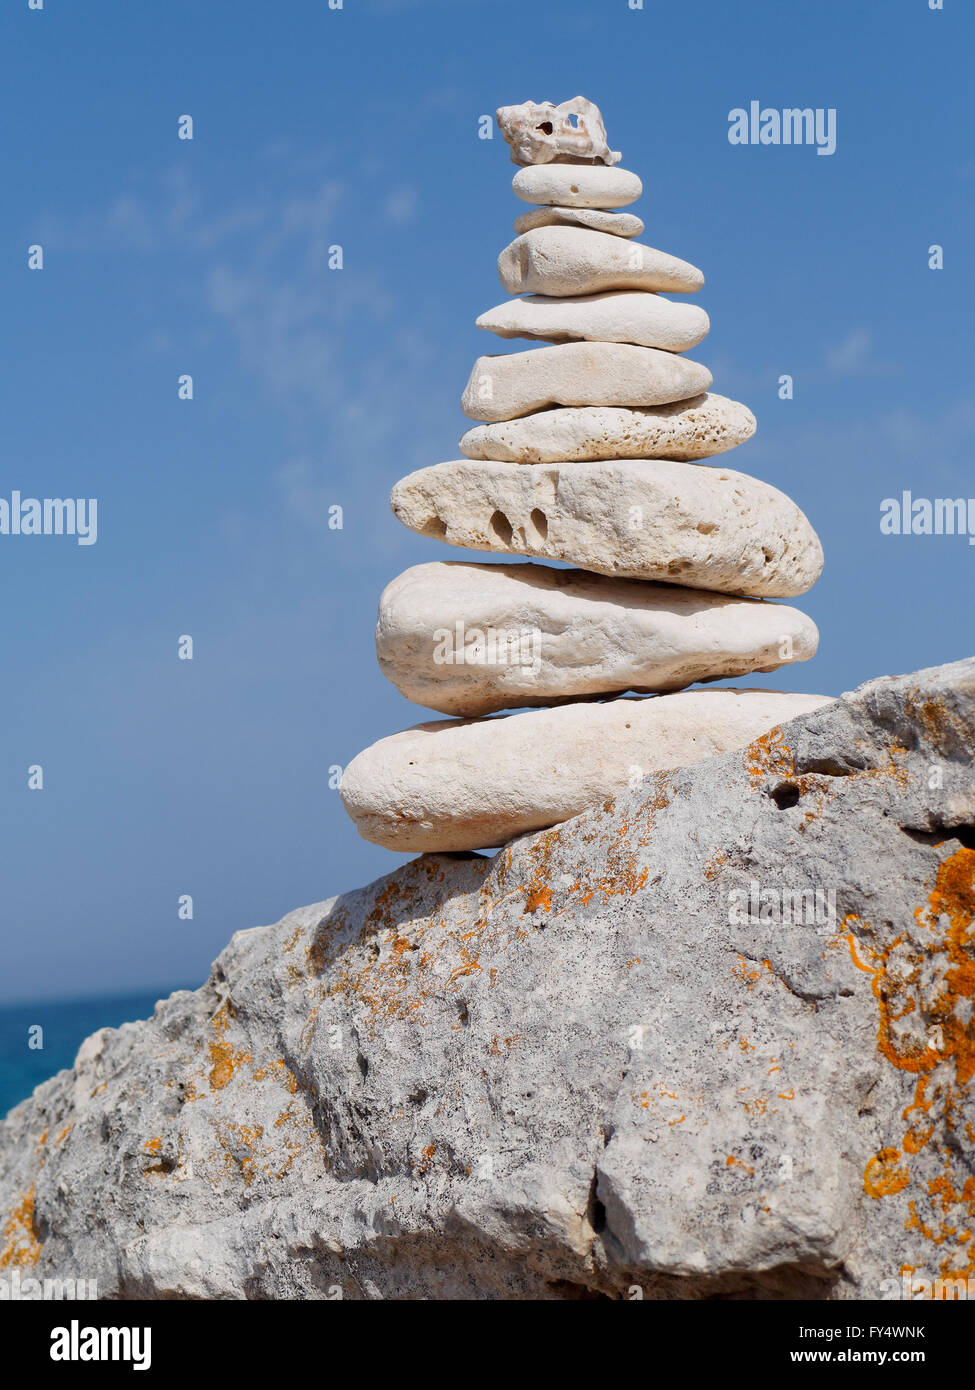 Montón de piedras blancas apiladas símbolo de equilibrio Foto de stock